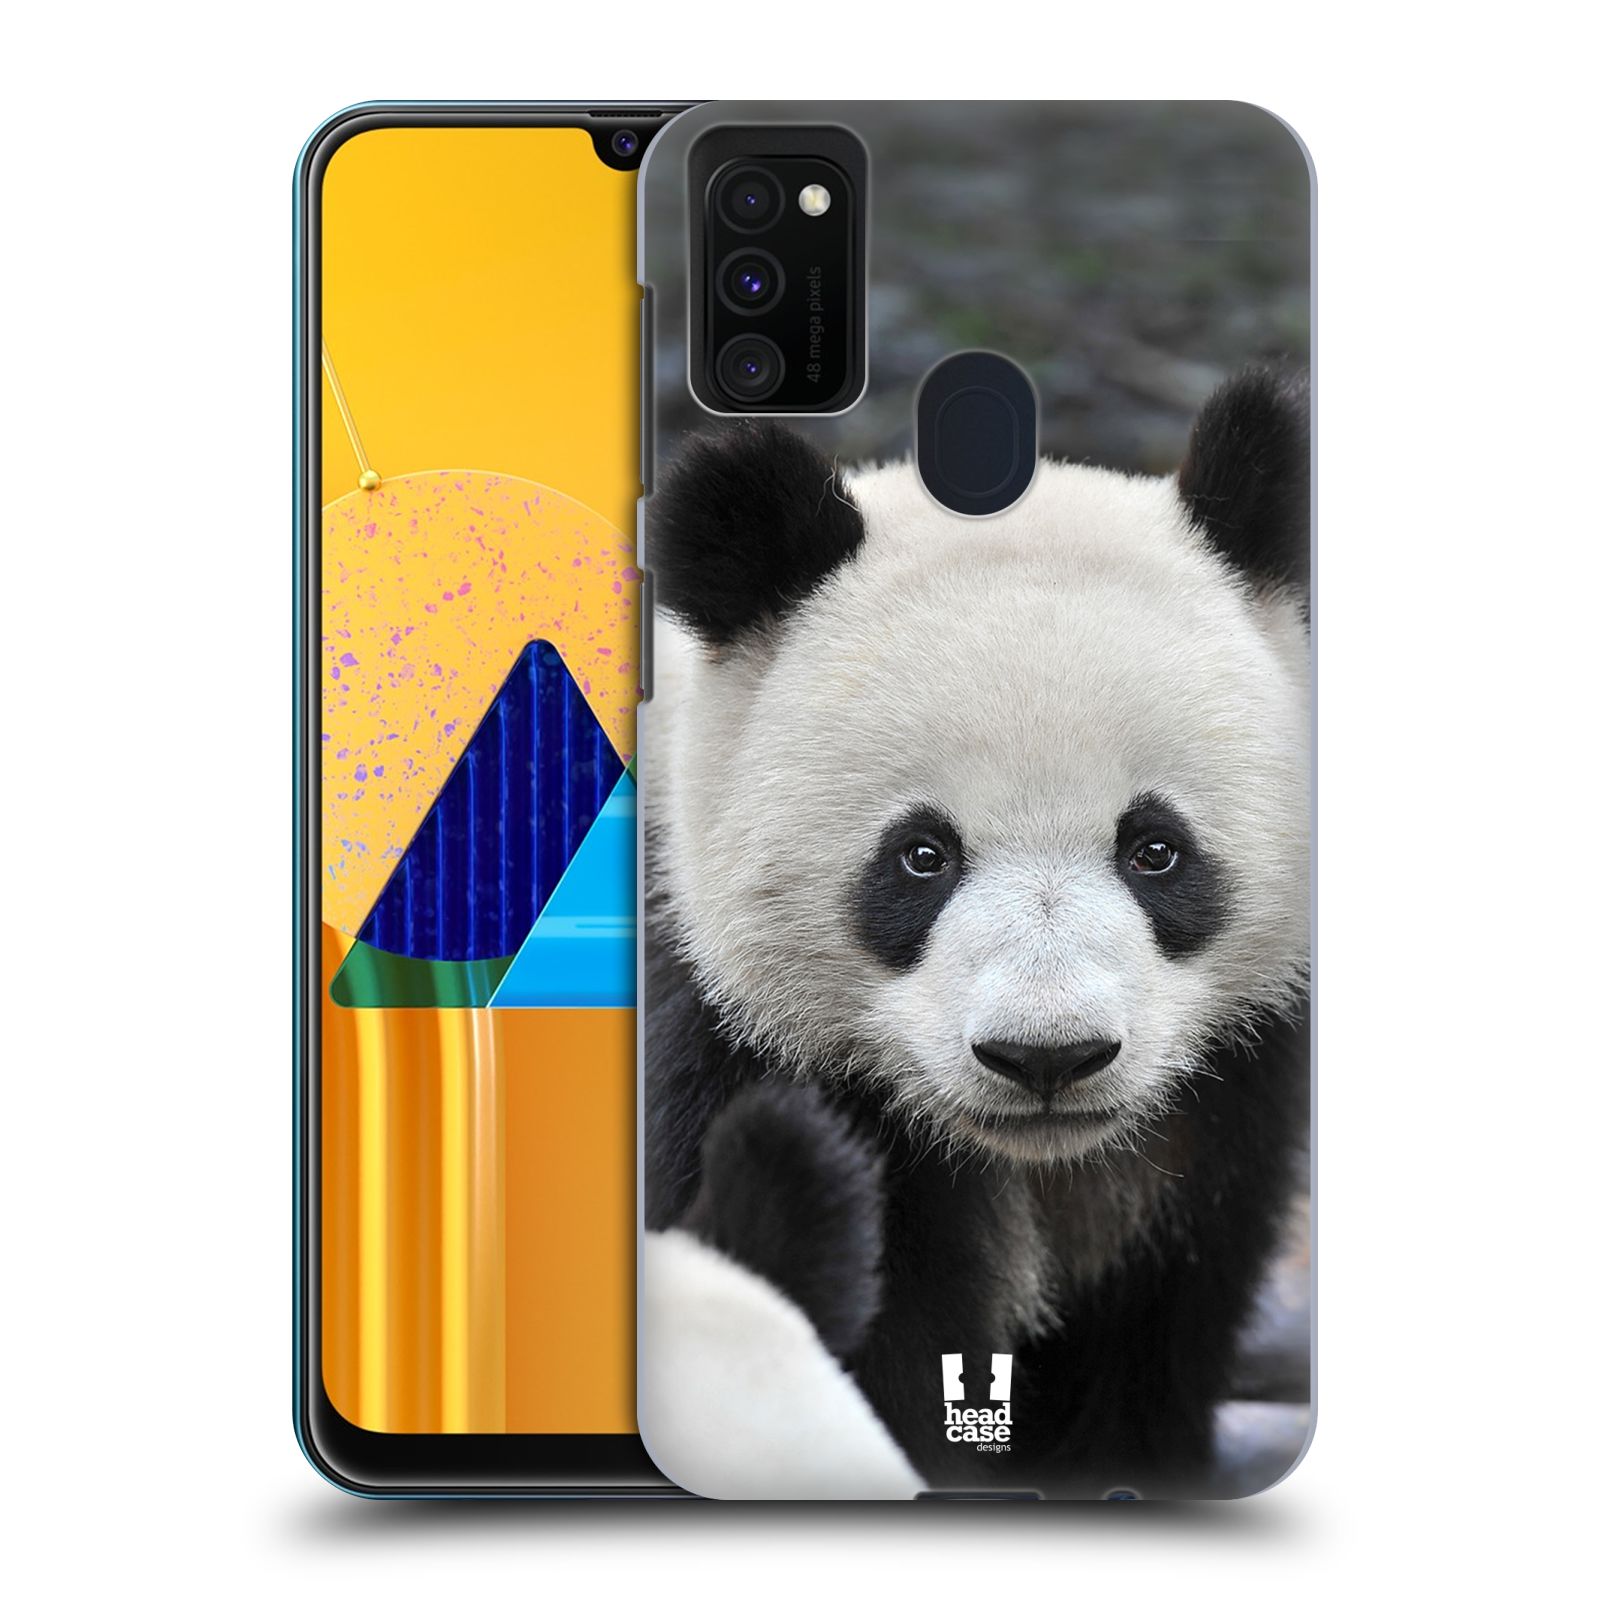 Zadní obal pro mobil Samsung Galaxy M21 - HEAD CASE - Svět zvířat medvěd panda